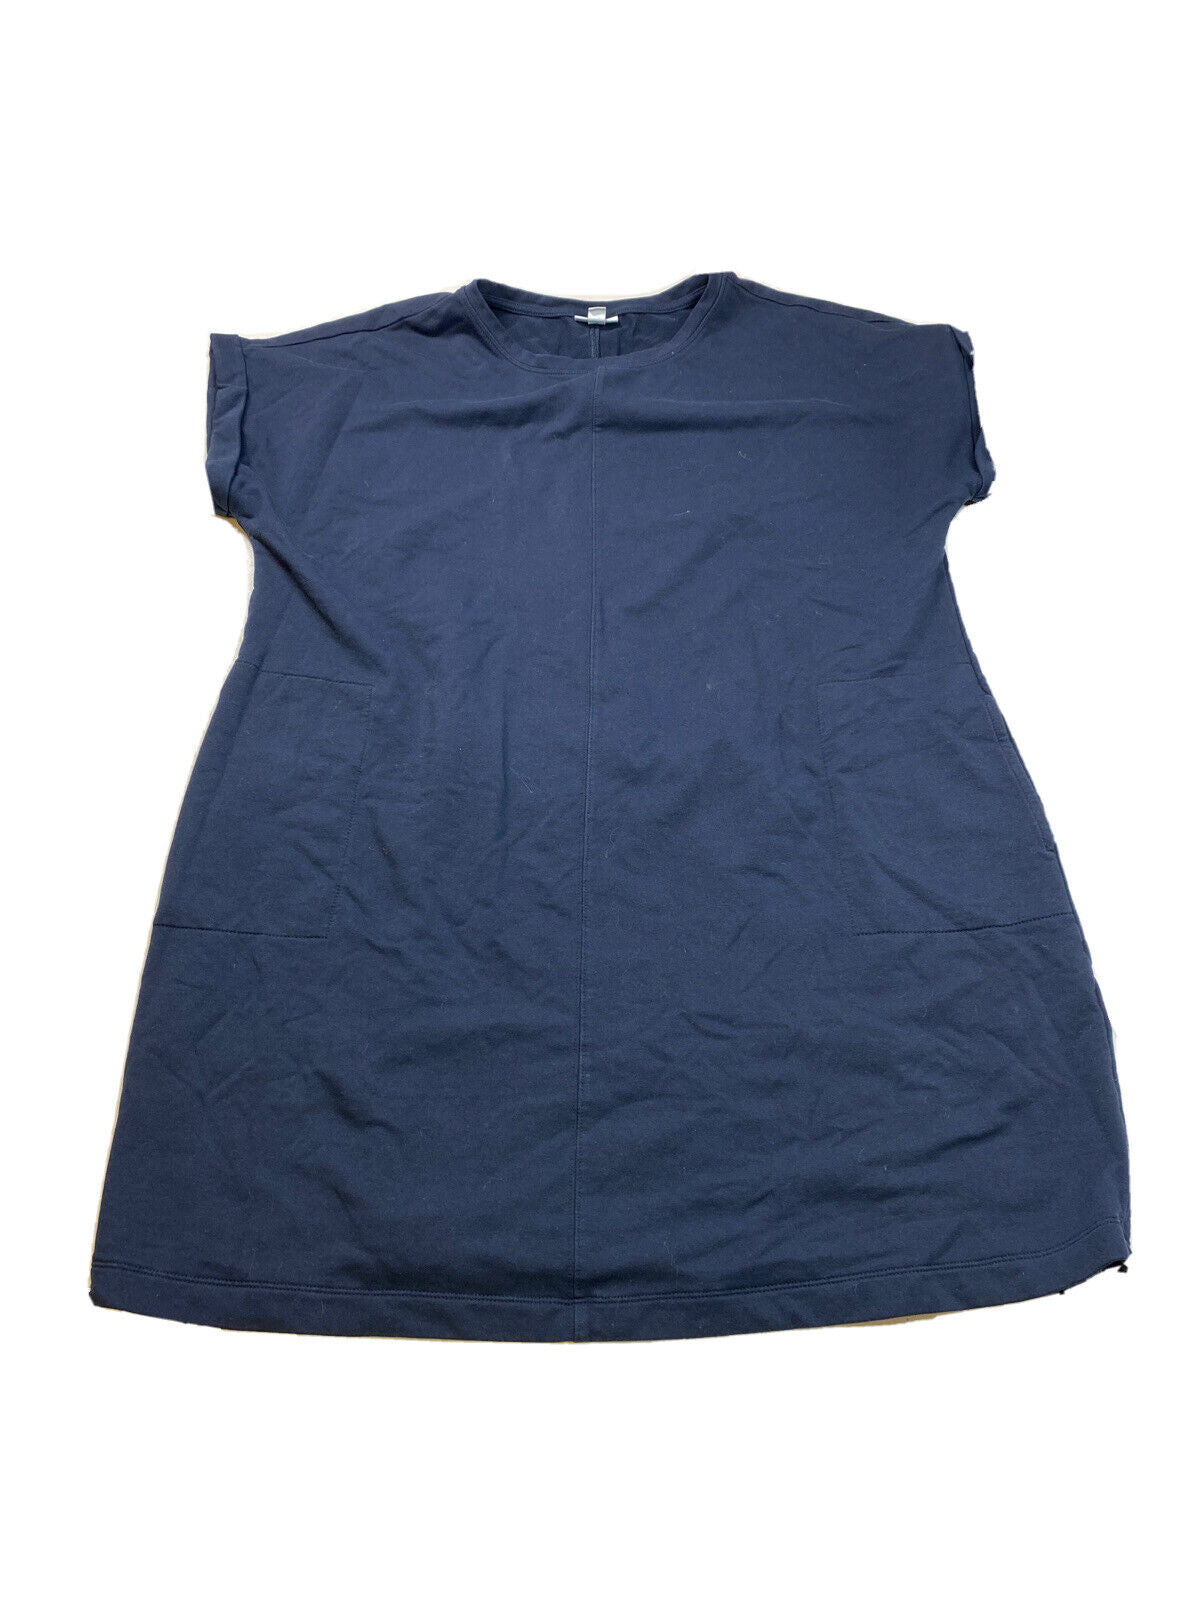 J.Jill Fit Women's Blue Sleeveless Short T-Shirt Dress - XL